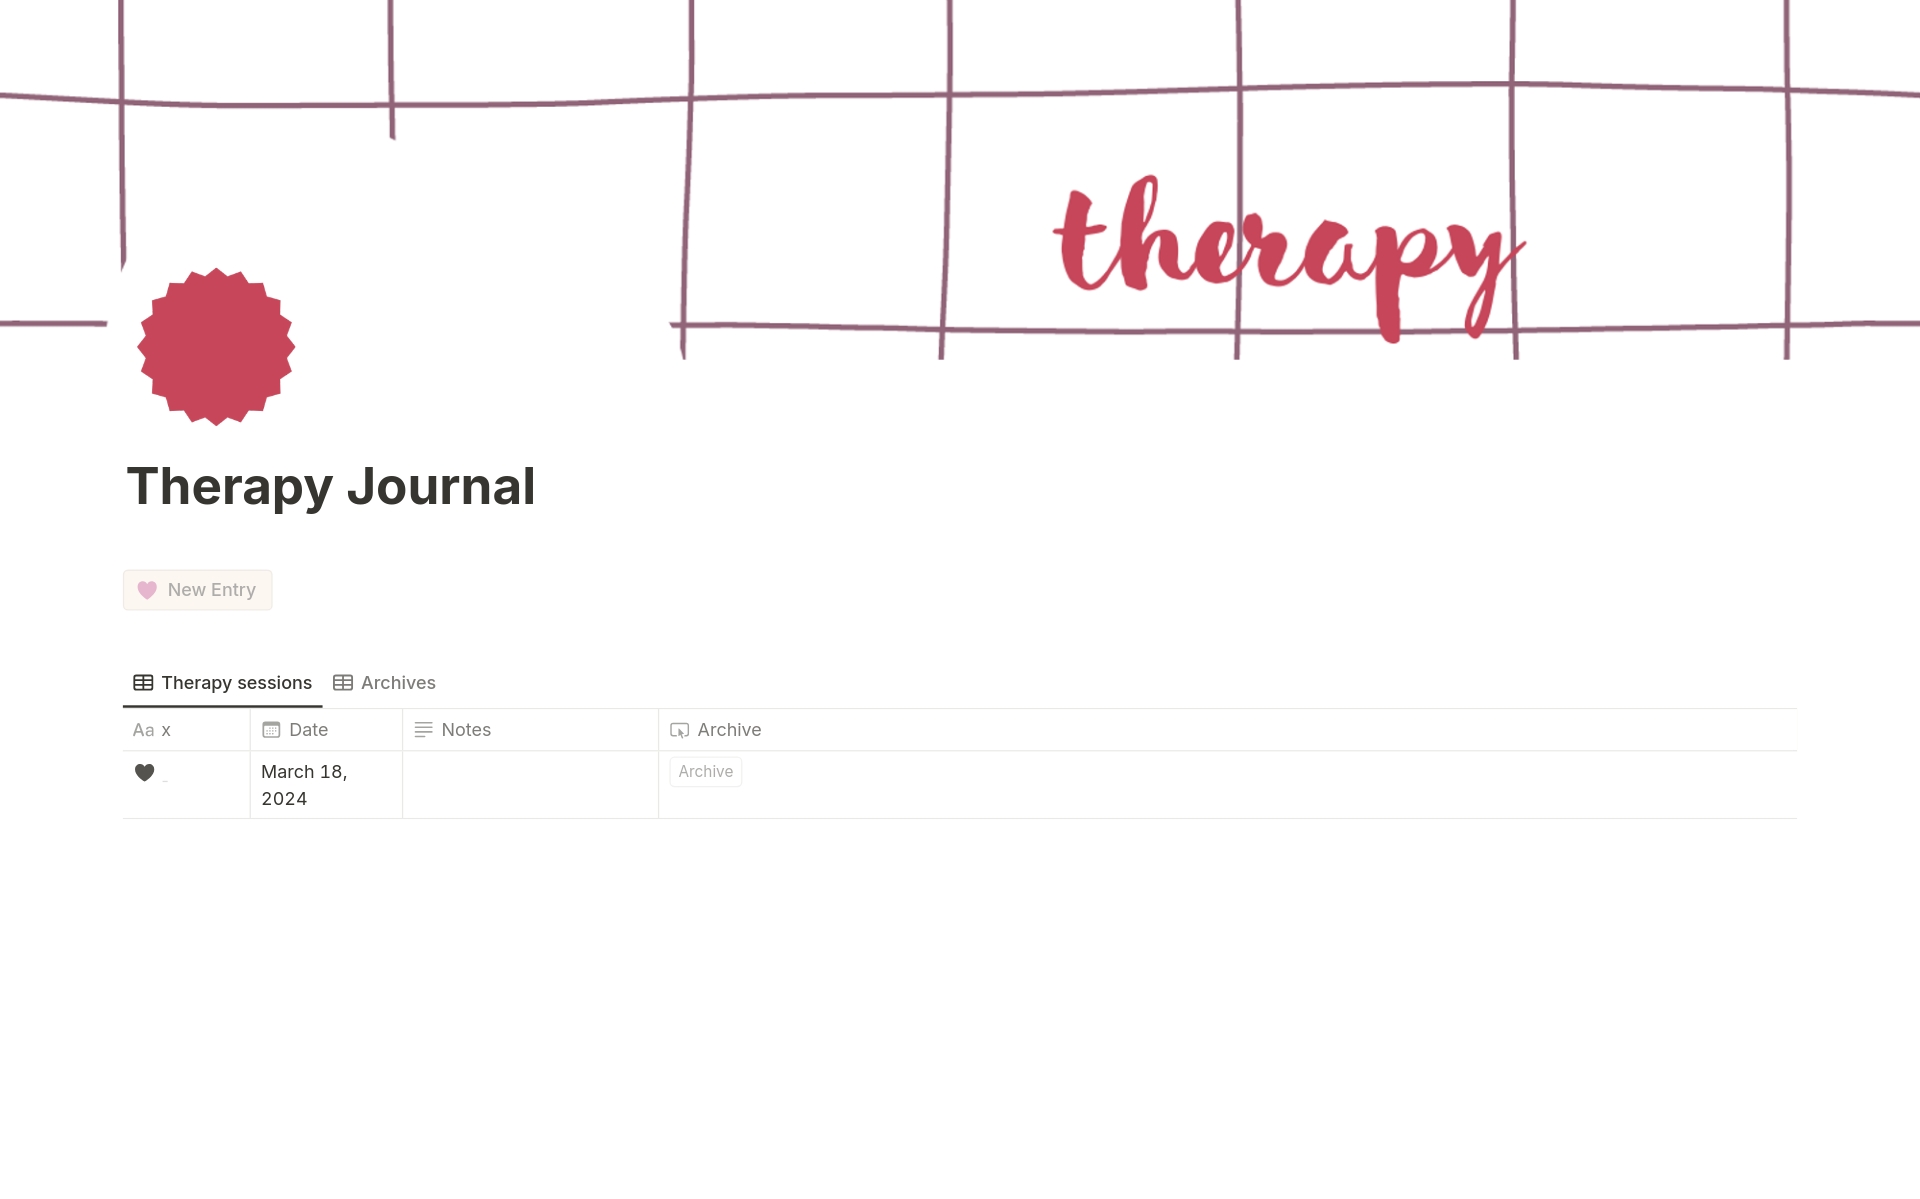 Vista previa de plantilla para Therapy Journal